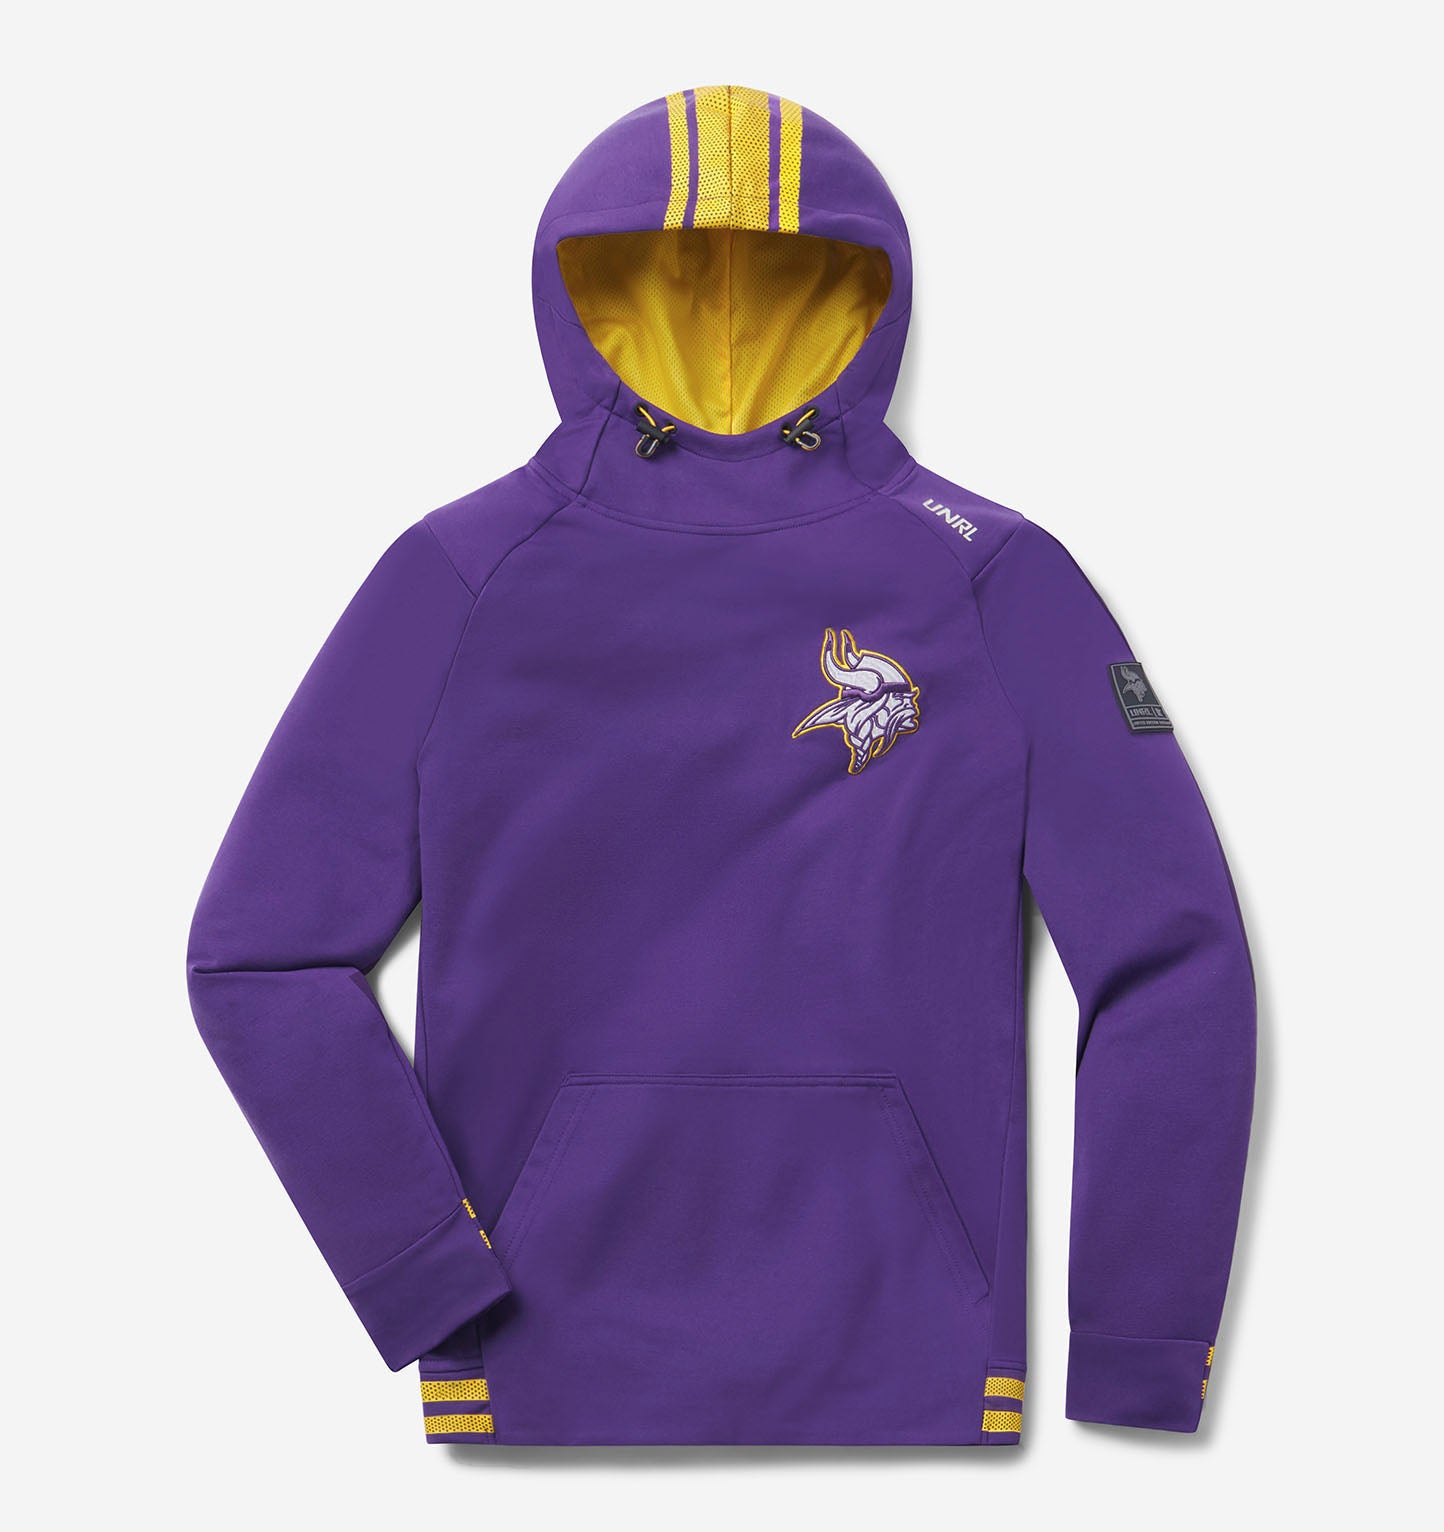 Minnesota Vikings Hoodies, Sweatshirts, Vikings Full Zip